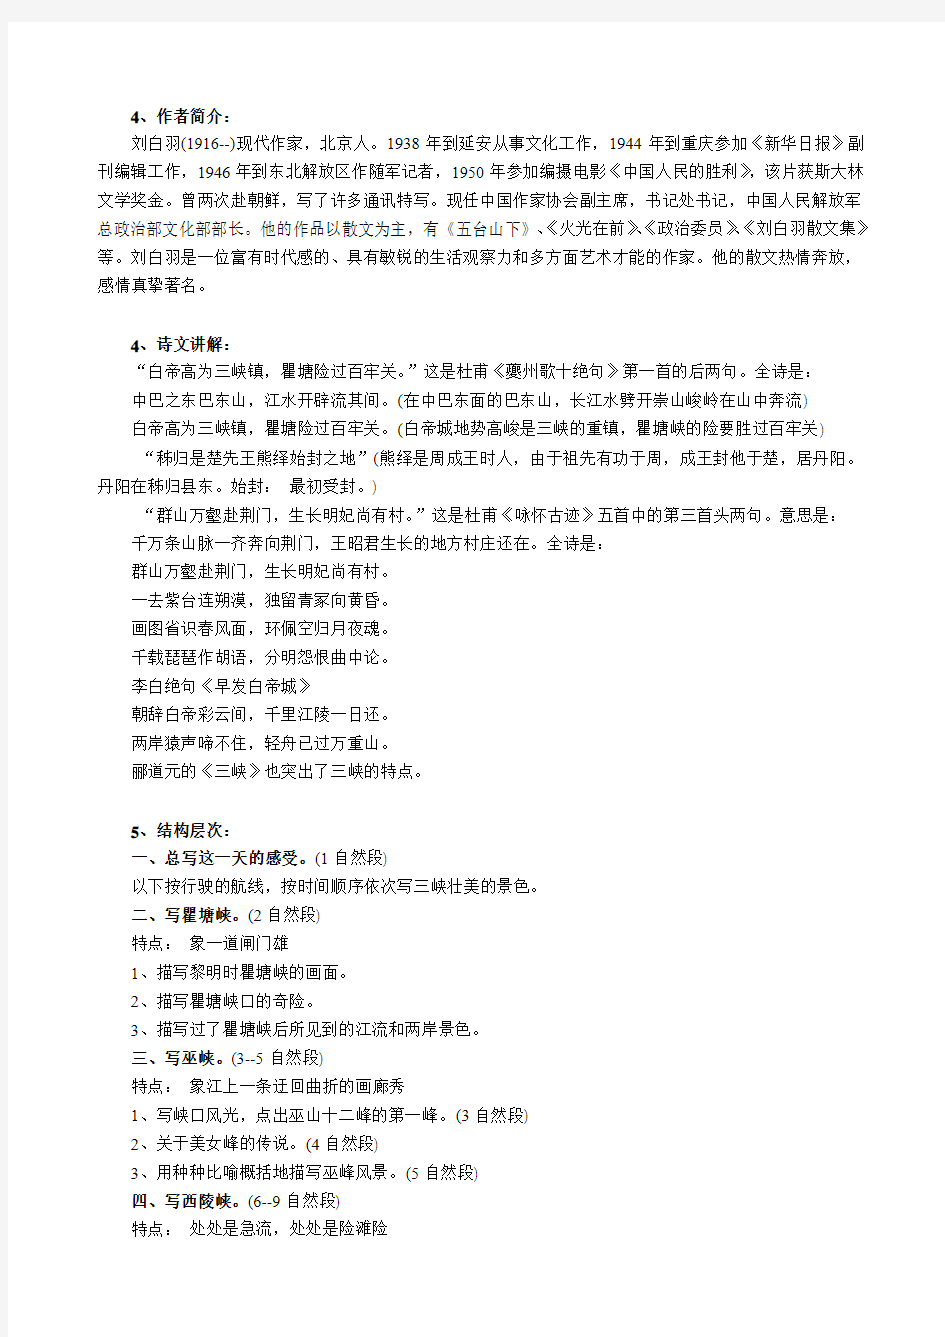 苏教版中职语文(基础模块)上册第8课《长江三峡》教案